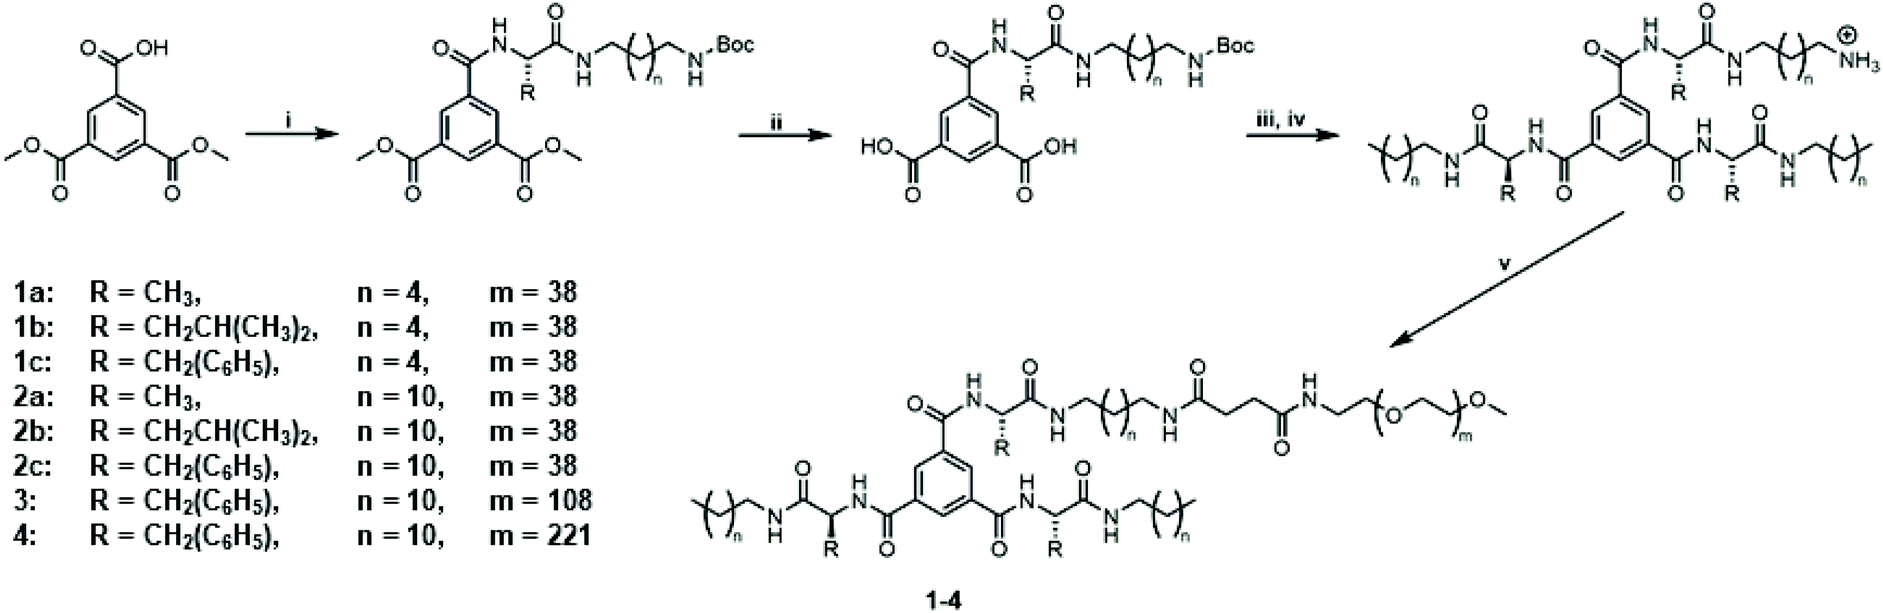 Impact Of Amino Acids On The Aqueous Self Assembly Of Benzenetrispeptides Into Supramolecular Polymer Bottlebrushes Polymer Chemistry Rsc Publishing